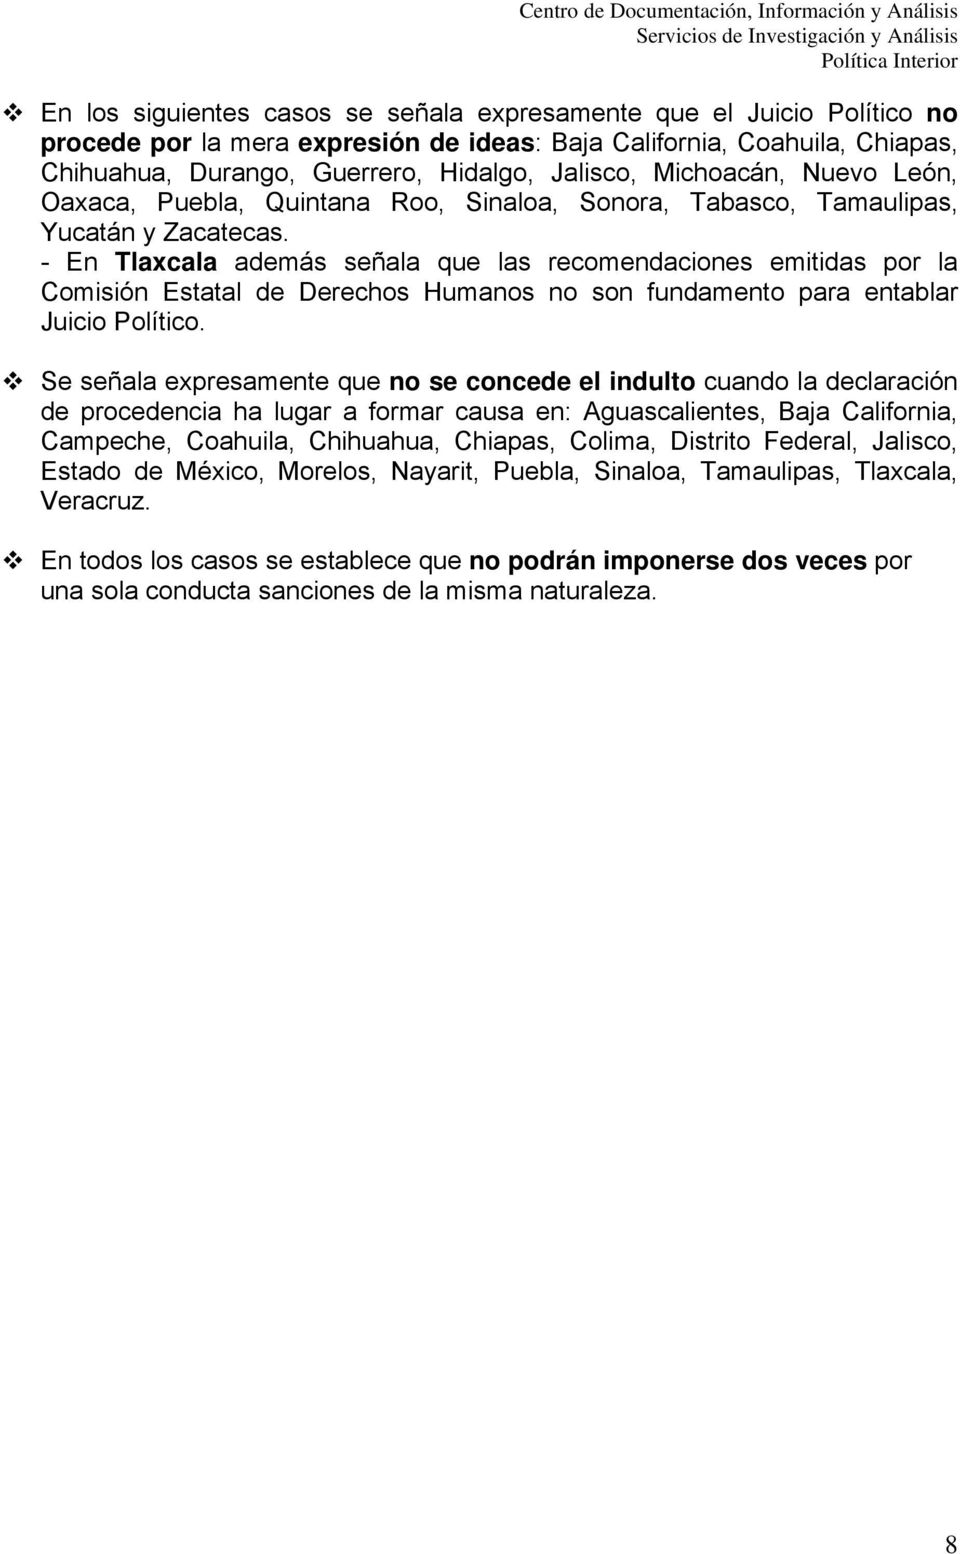 Yucatán y Zacatecas. - En Tlaxcala además señala que las recomendaciones emitidas por la Comisión Estatal de Derechos Humanos no son fundamento para entablar Juicio Político.